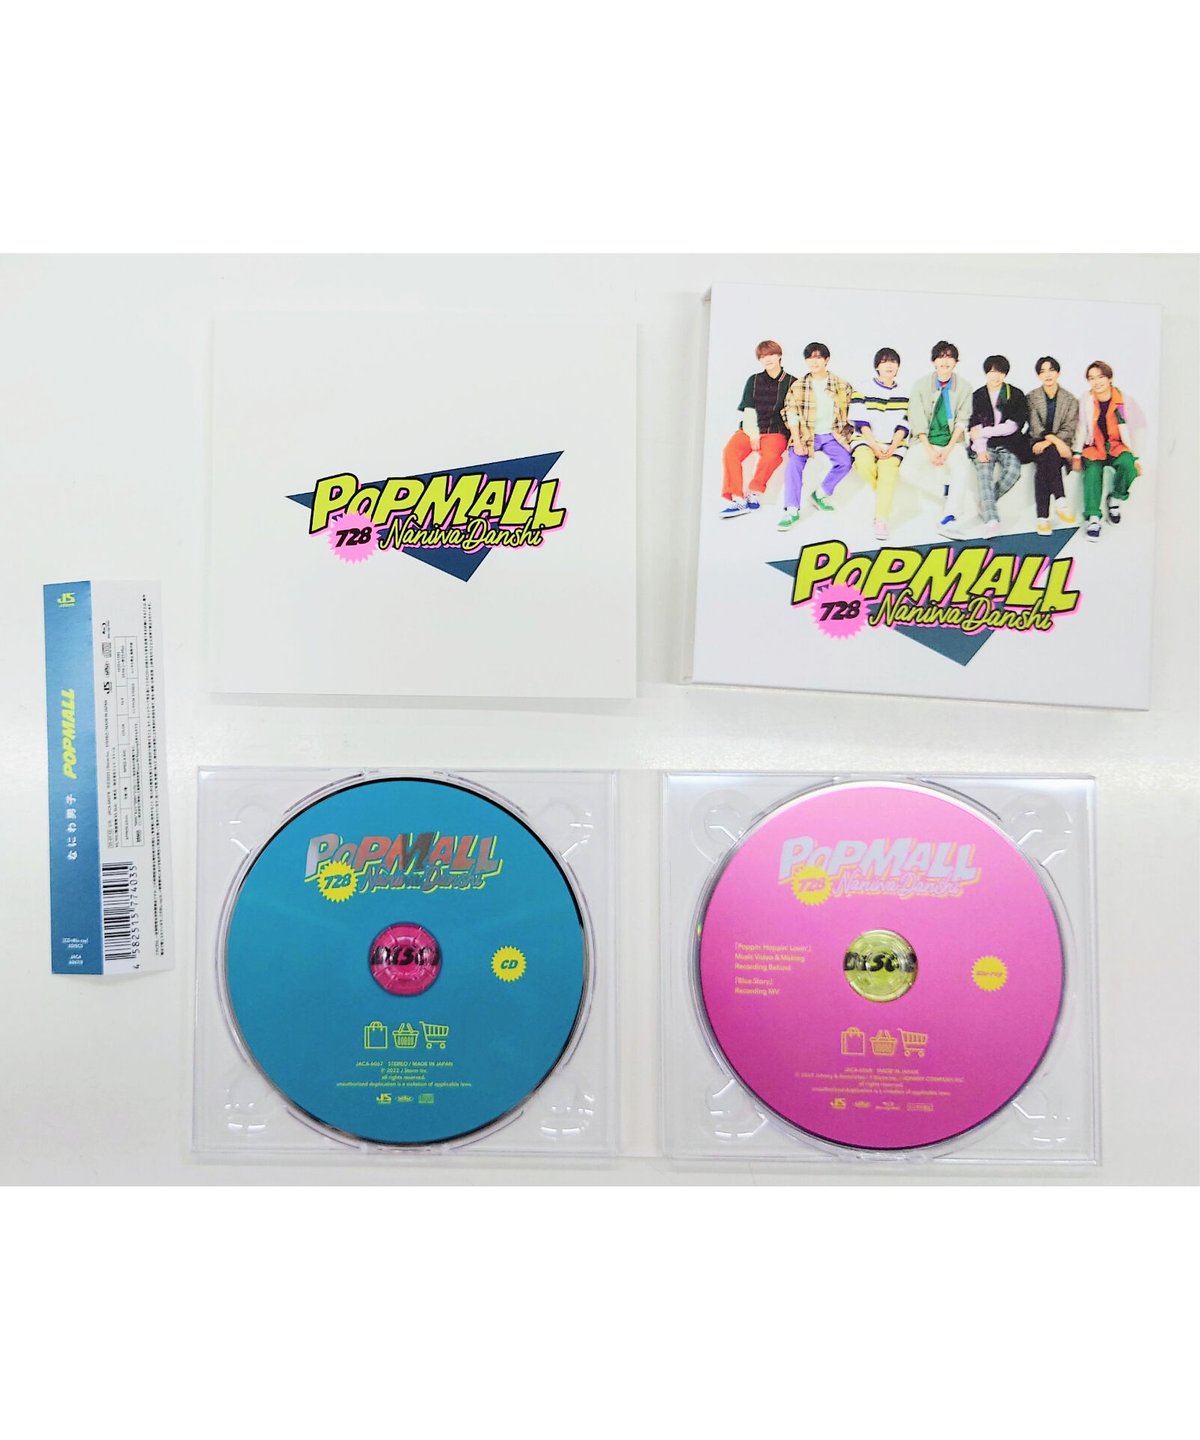 なにわ男子 2nd アルバム 『POPMALL』[初回限定盤①] ◆ CD+Blu-ray